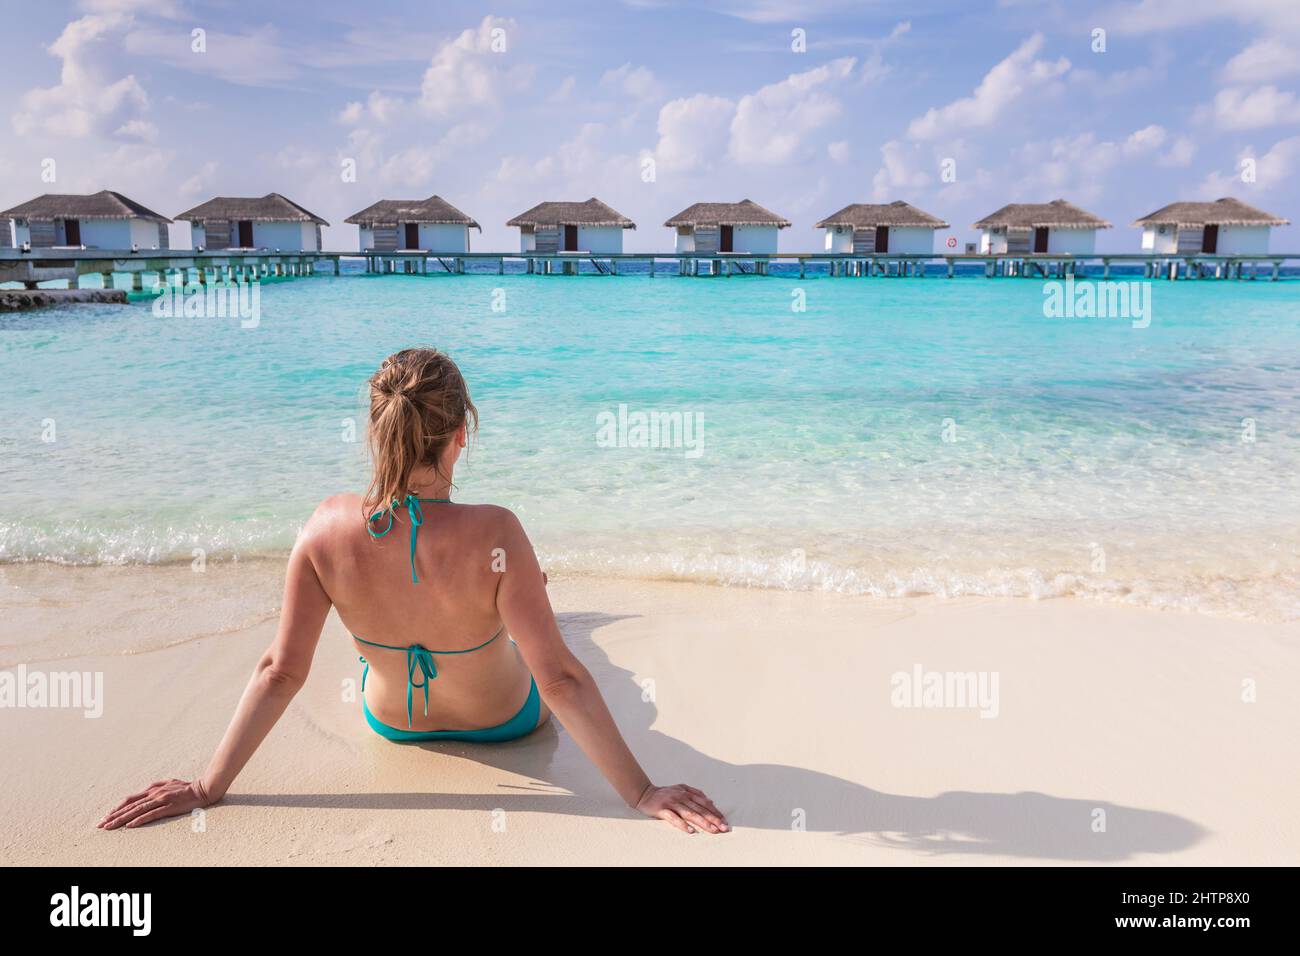 Vacanze in spiaggia con sole donna che si bagna sulla sabbia bianca in un lussuoso hotel resort nelle Maldive con ville sull'acqua, mare turchese e blu Foto Stock